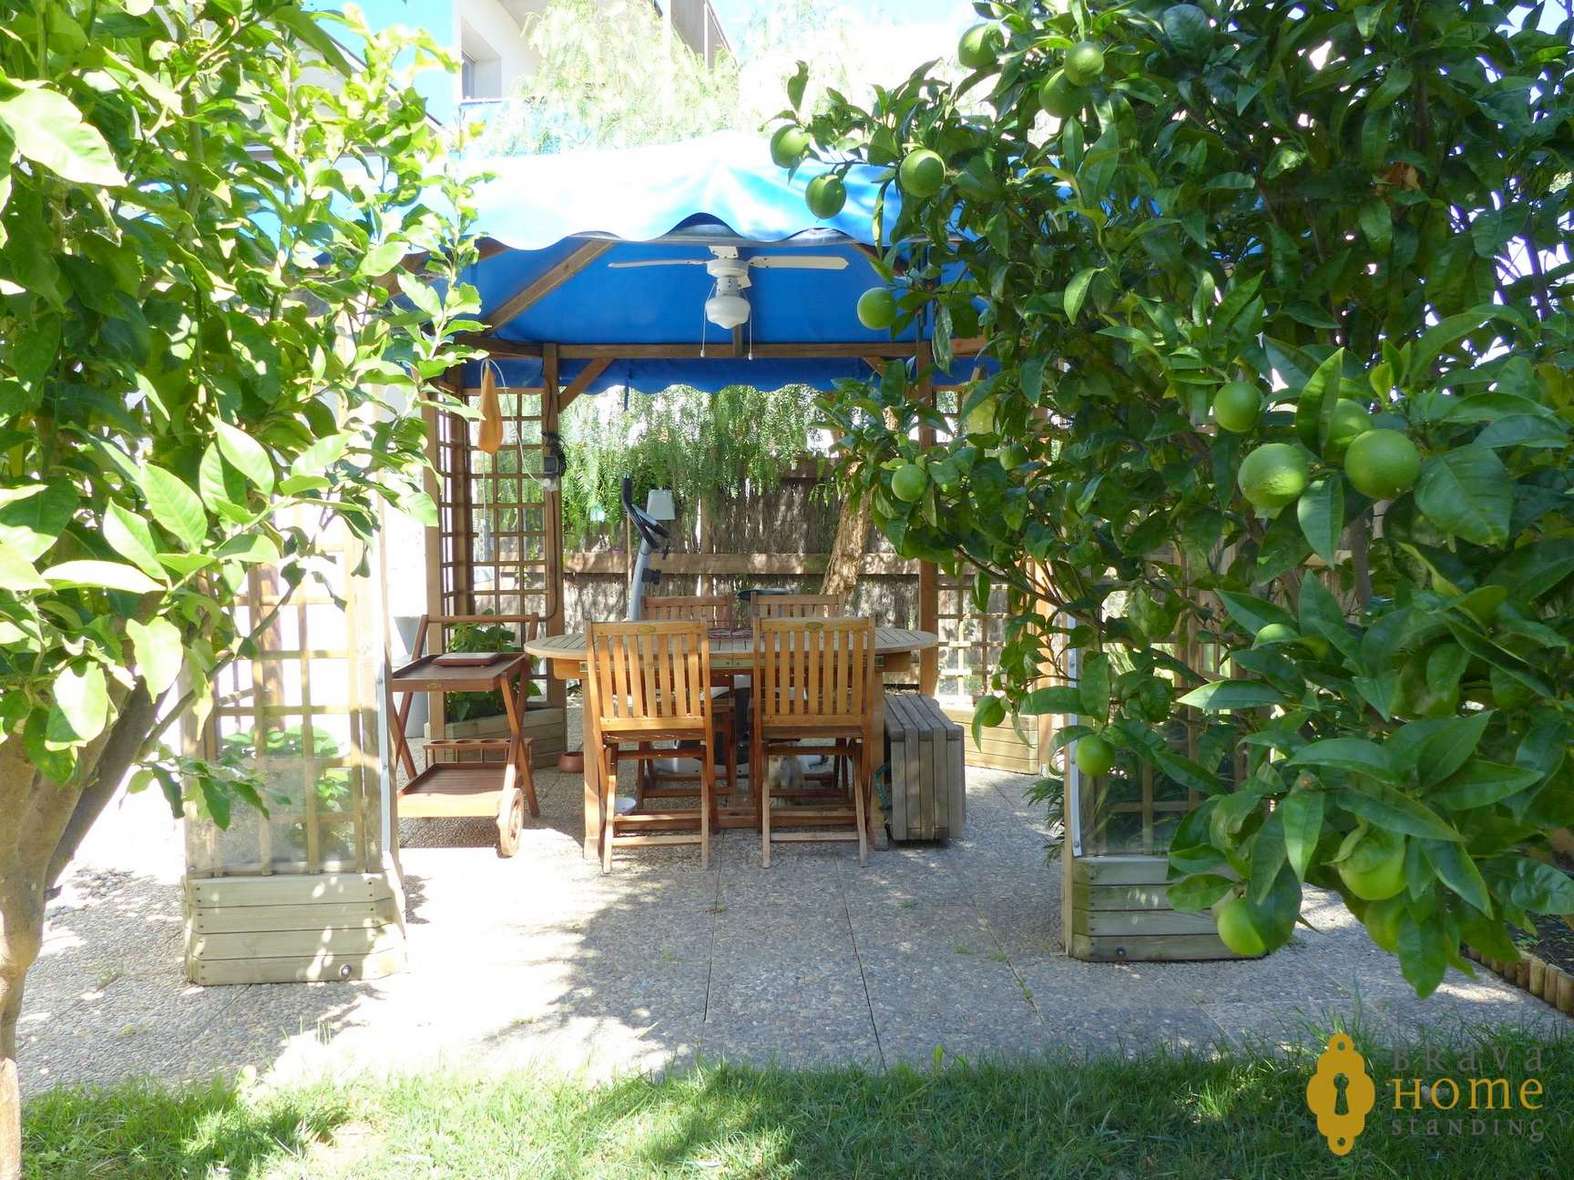 Superbe appartement avec jardin privé à vendre à Rosas - Santa Margarita